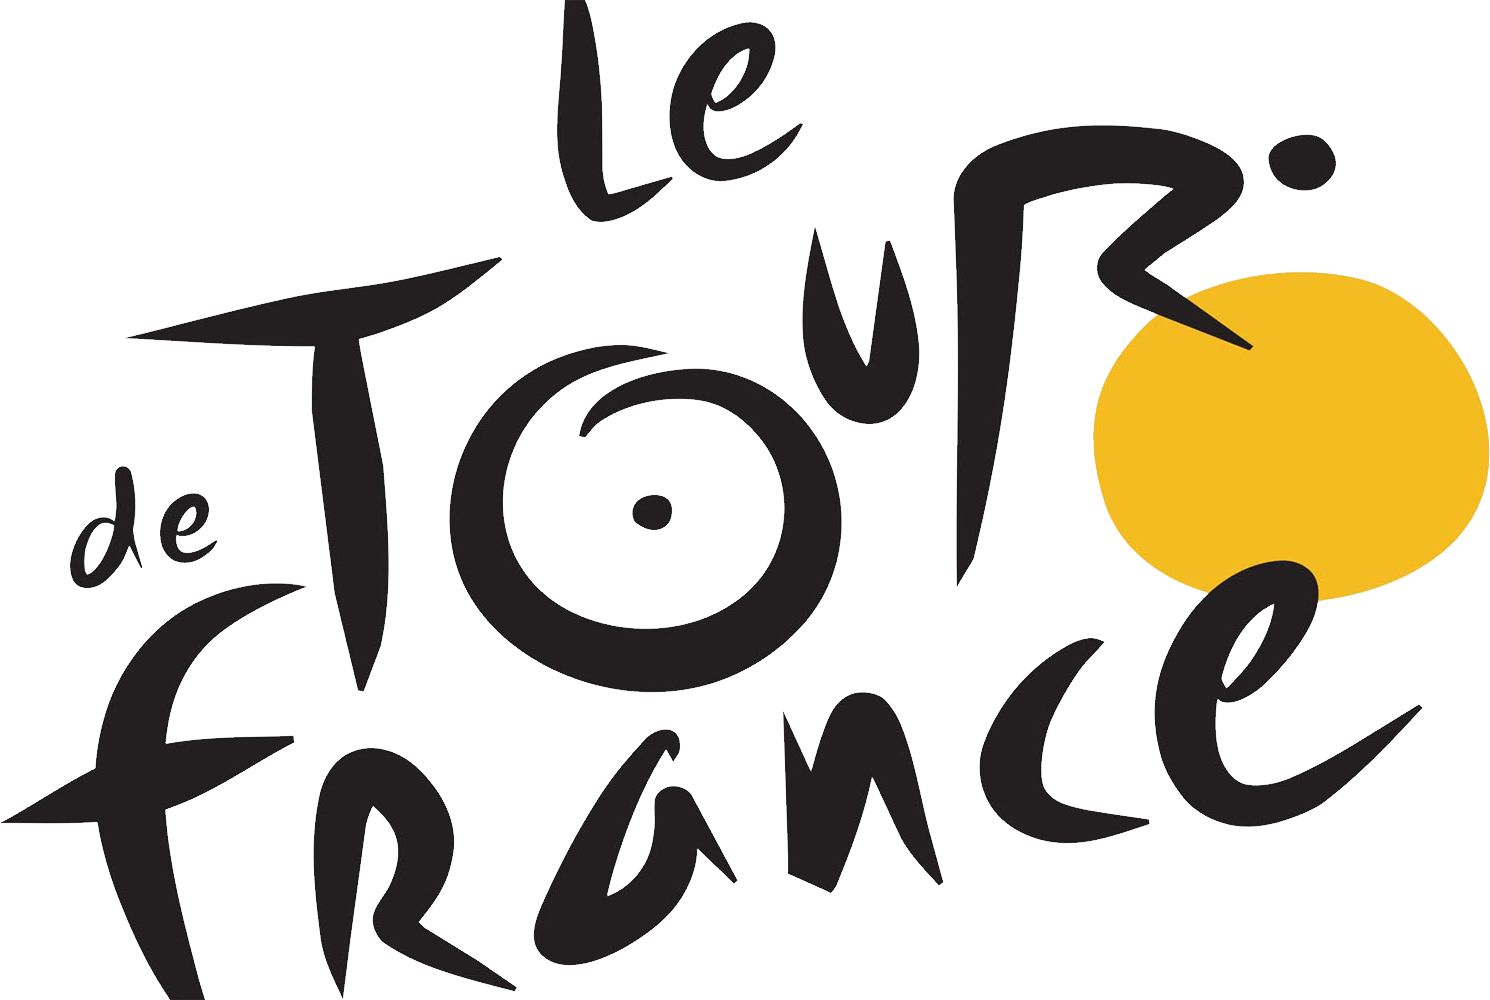 Tour de France-Logo